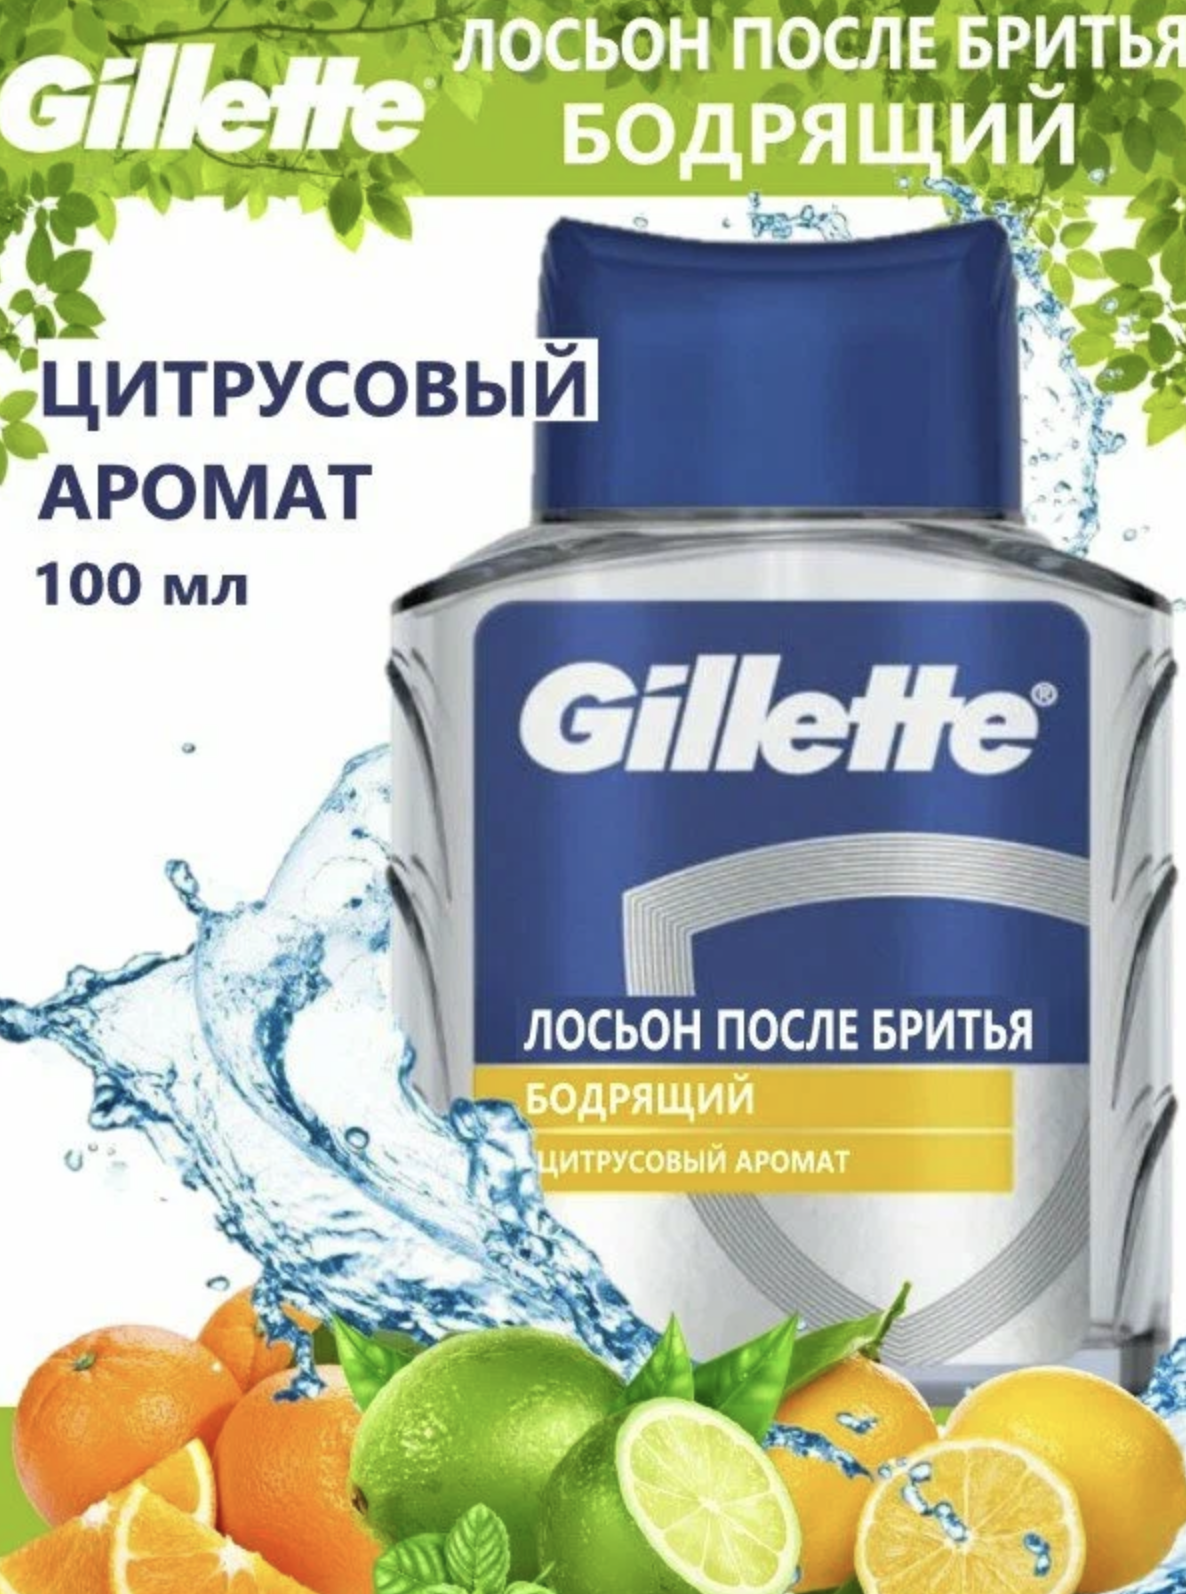   / Gillette -       100 